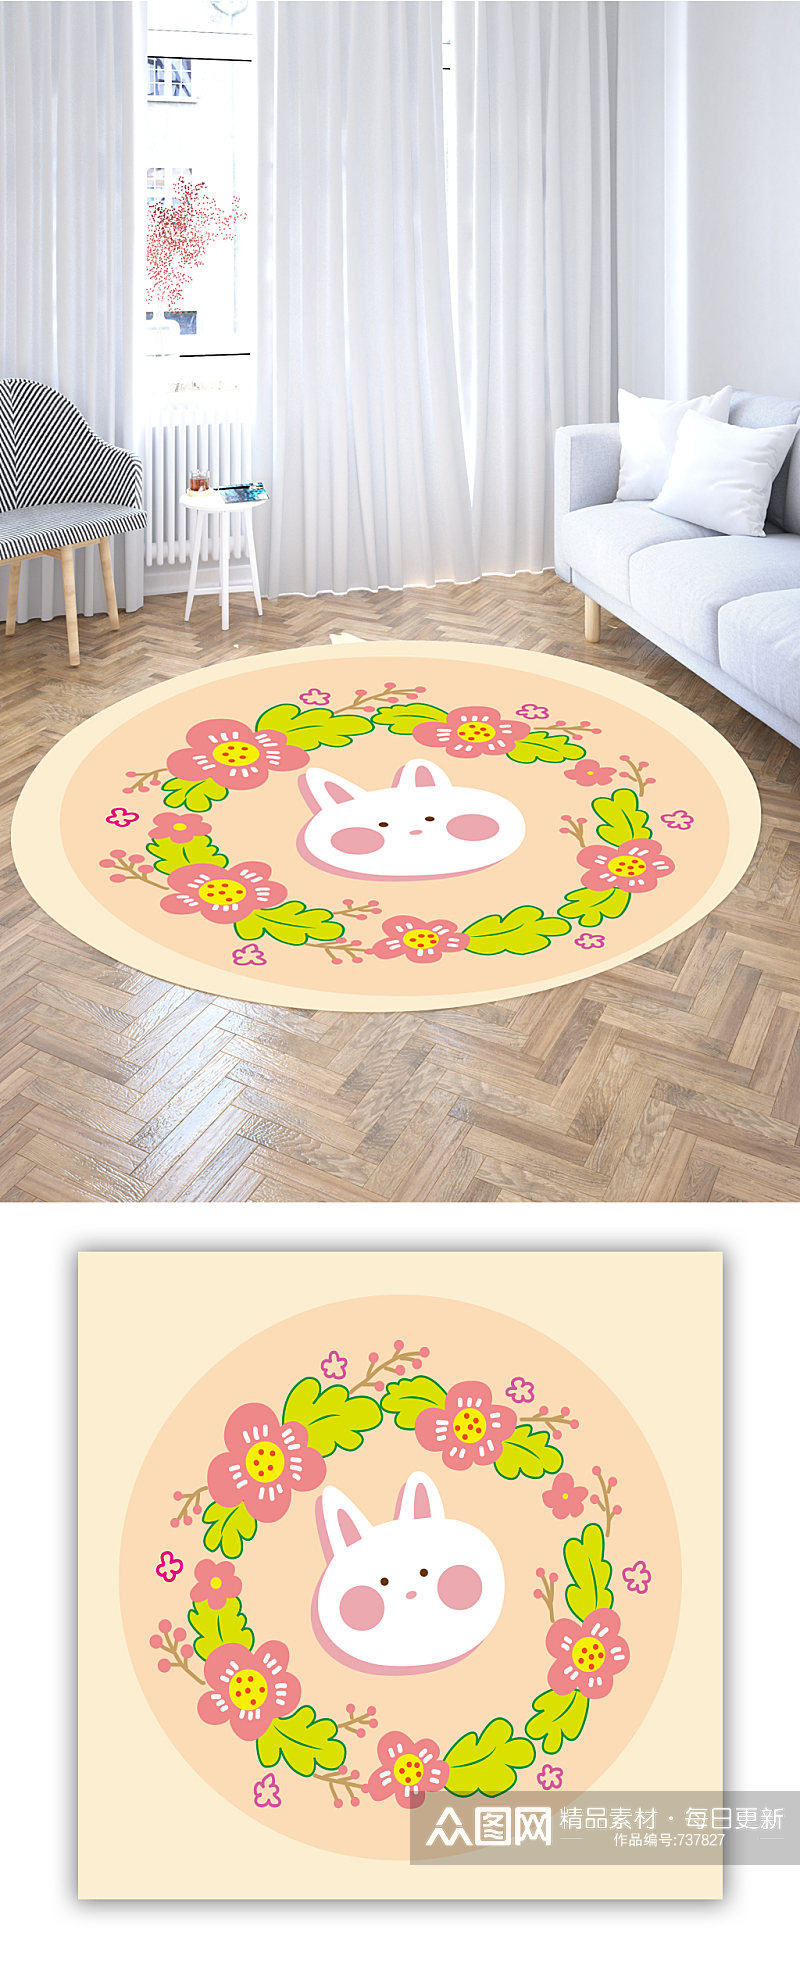 圆形地毯花卉兔子素材